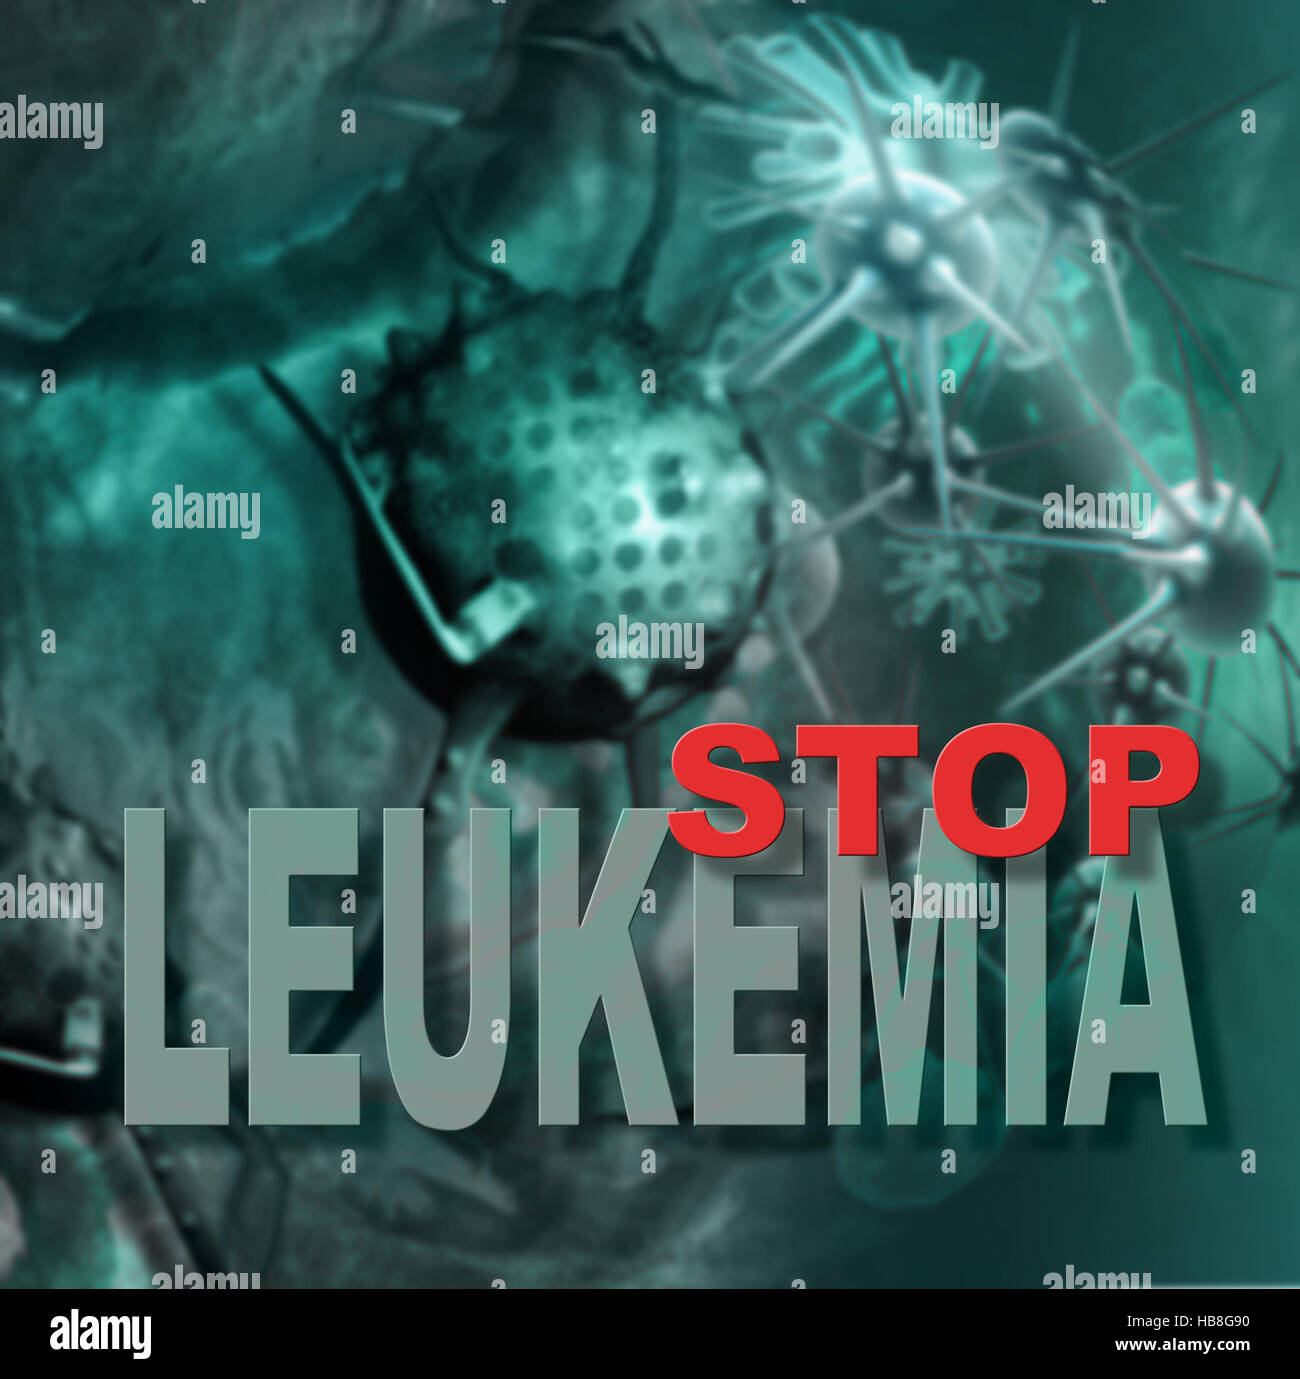 leukemia cells Stock Photo